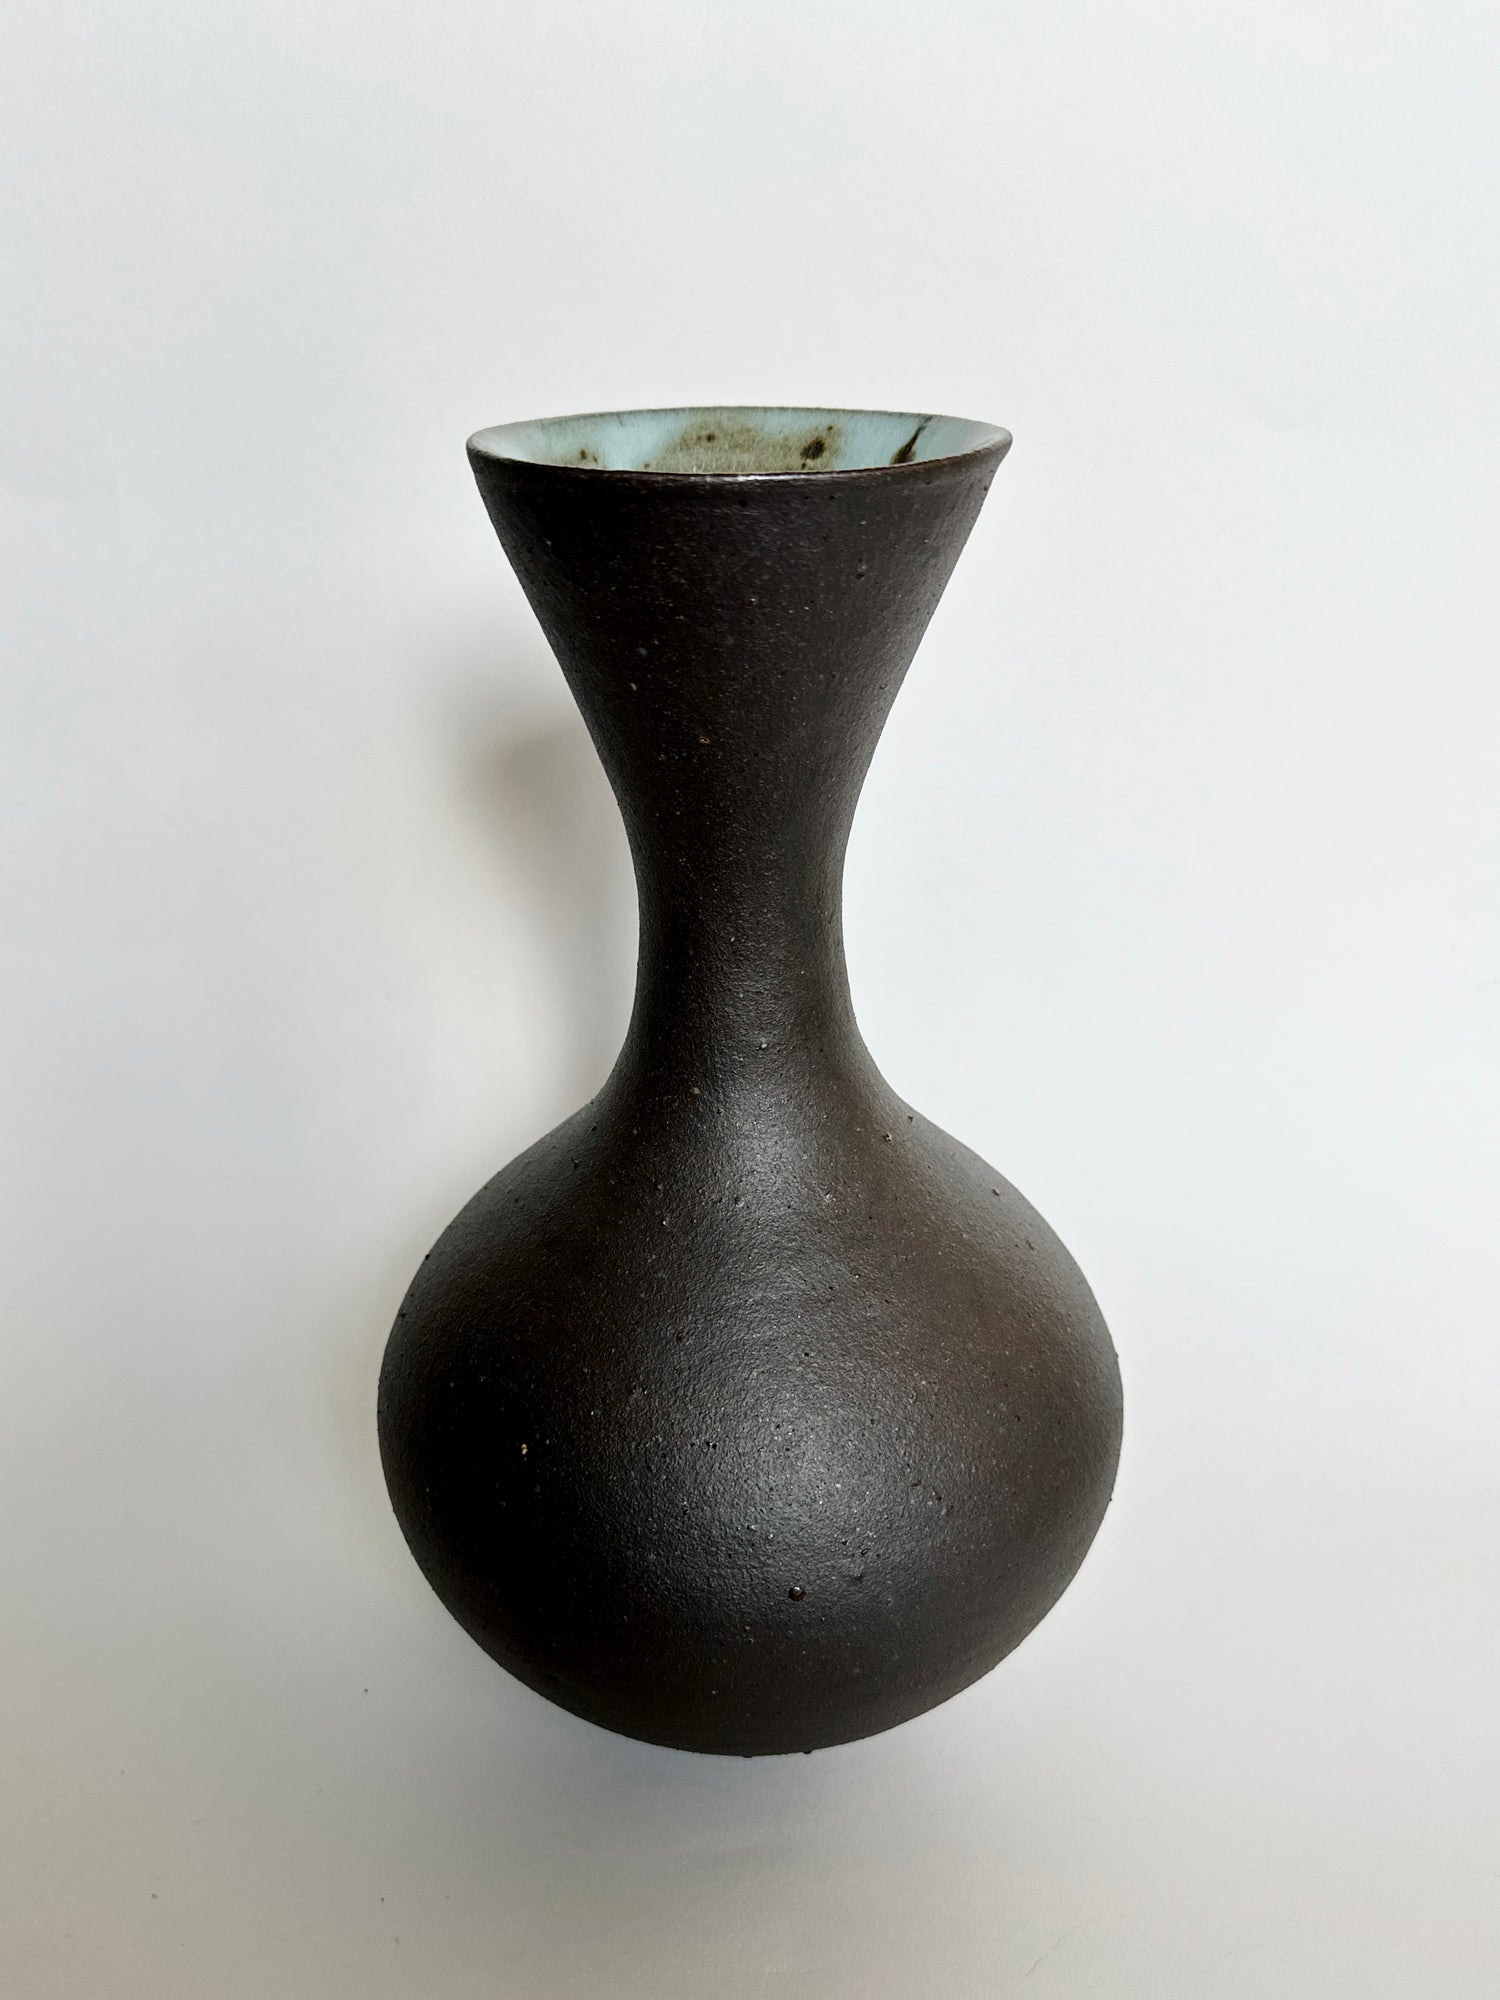 Black clay vessel No. 17